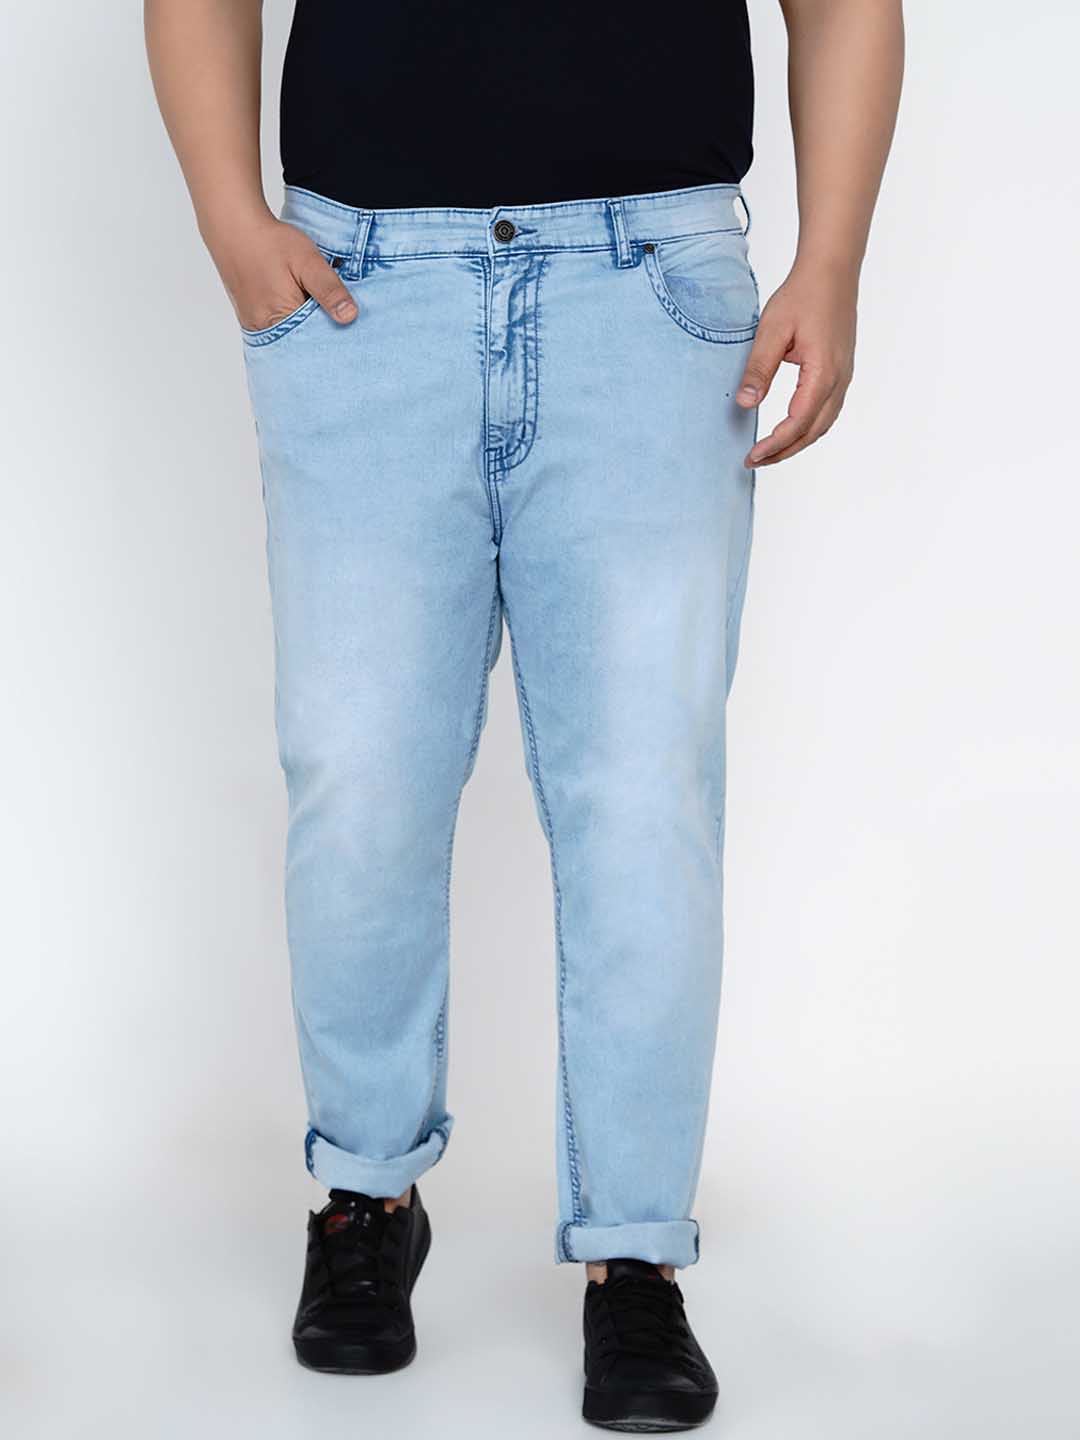 bottomwear/jeans/JPJ12137/jpj12137-4.jpg